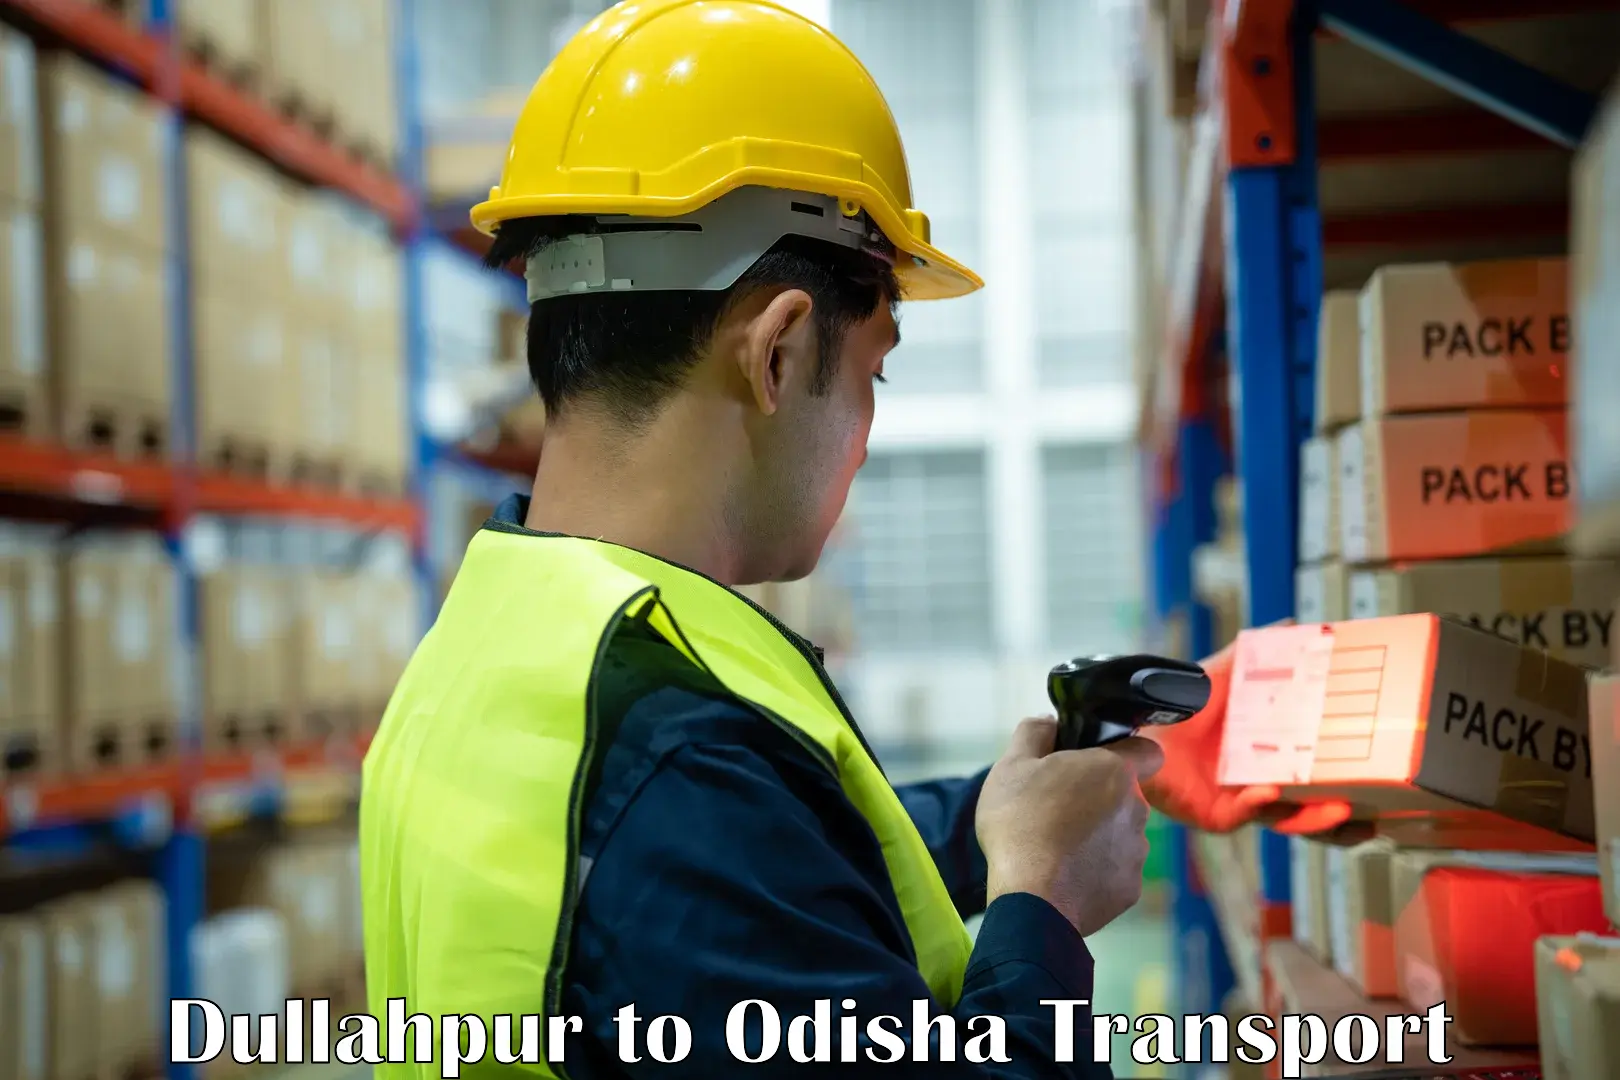 Material transport services Dullahpur to Mahakalapada